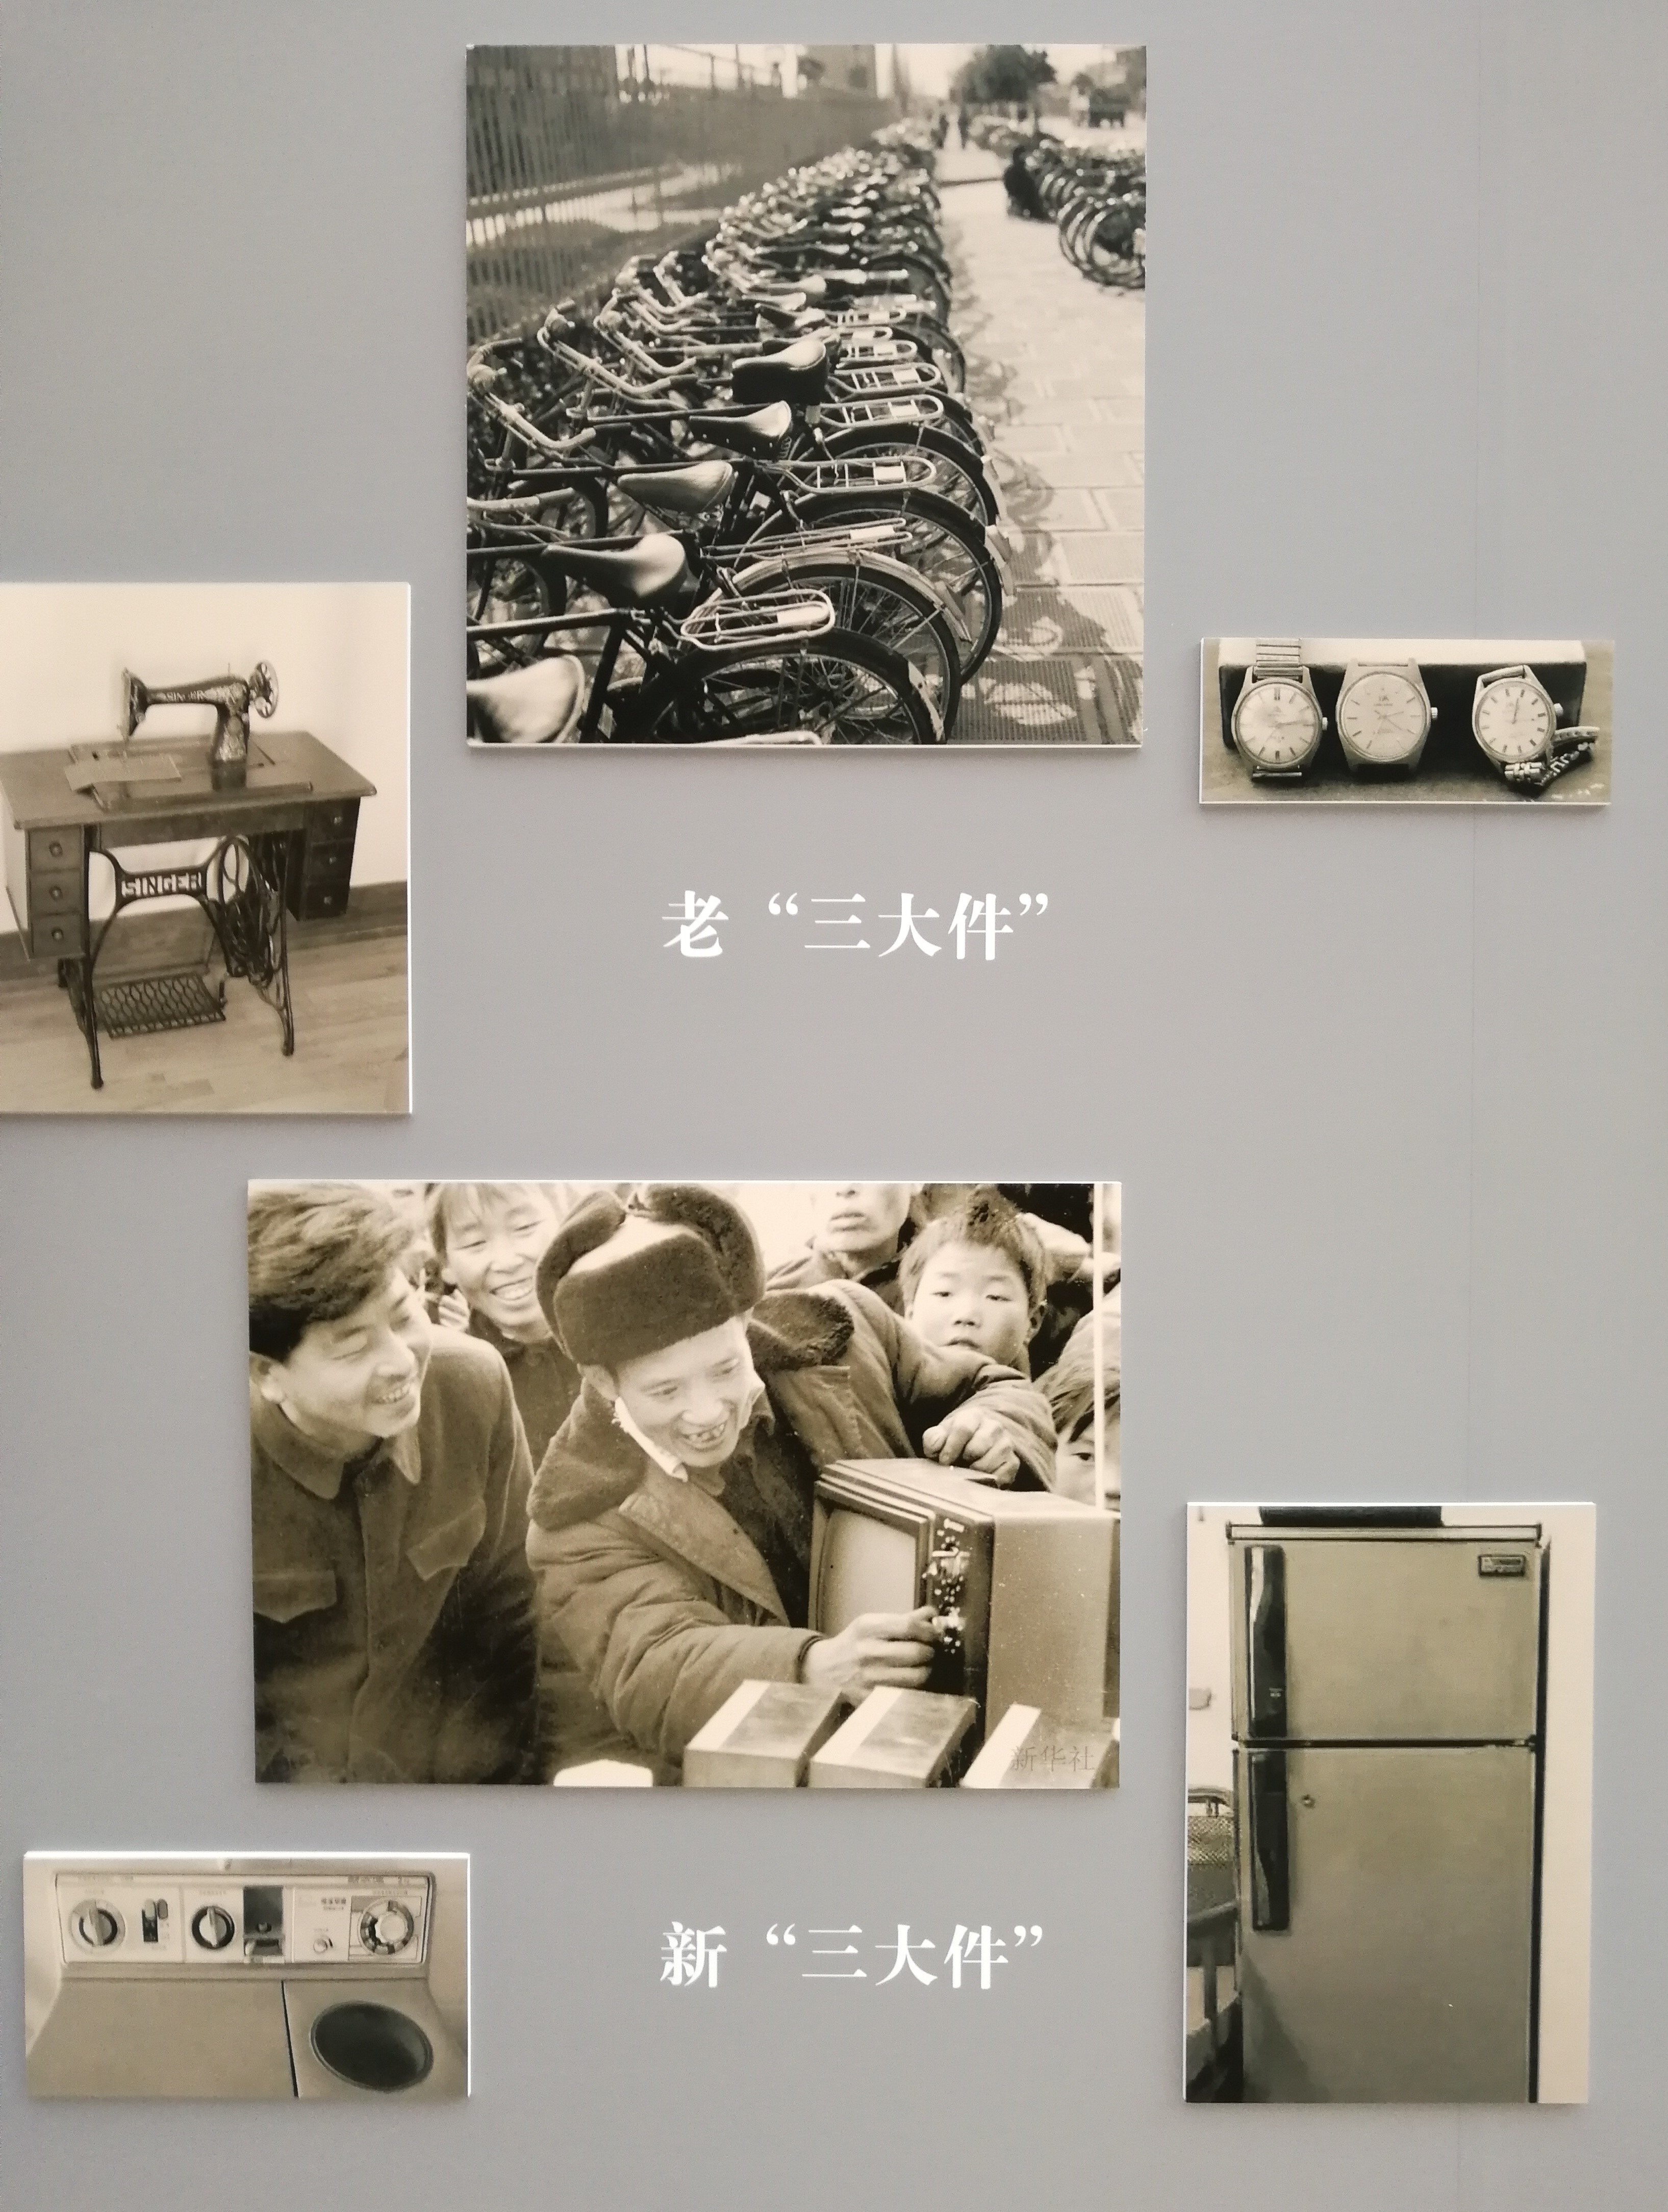 2018年北京档案馆票据展览